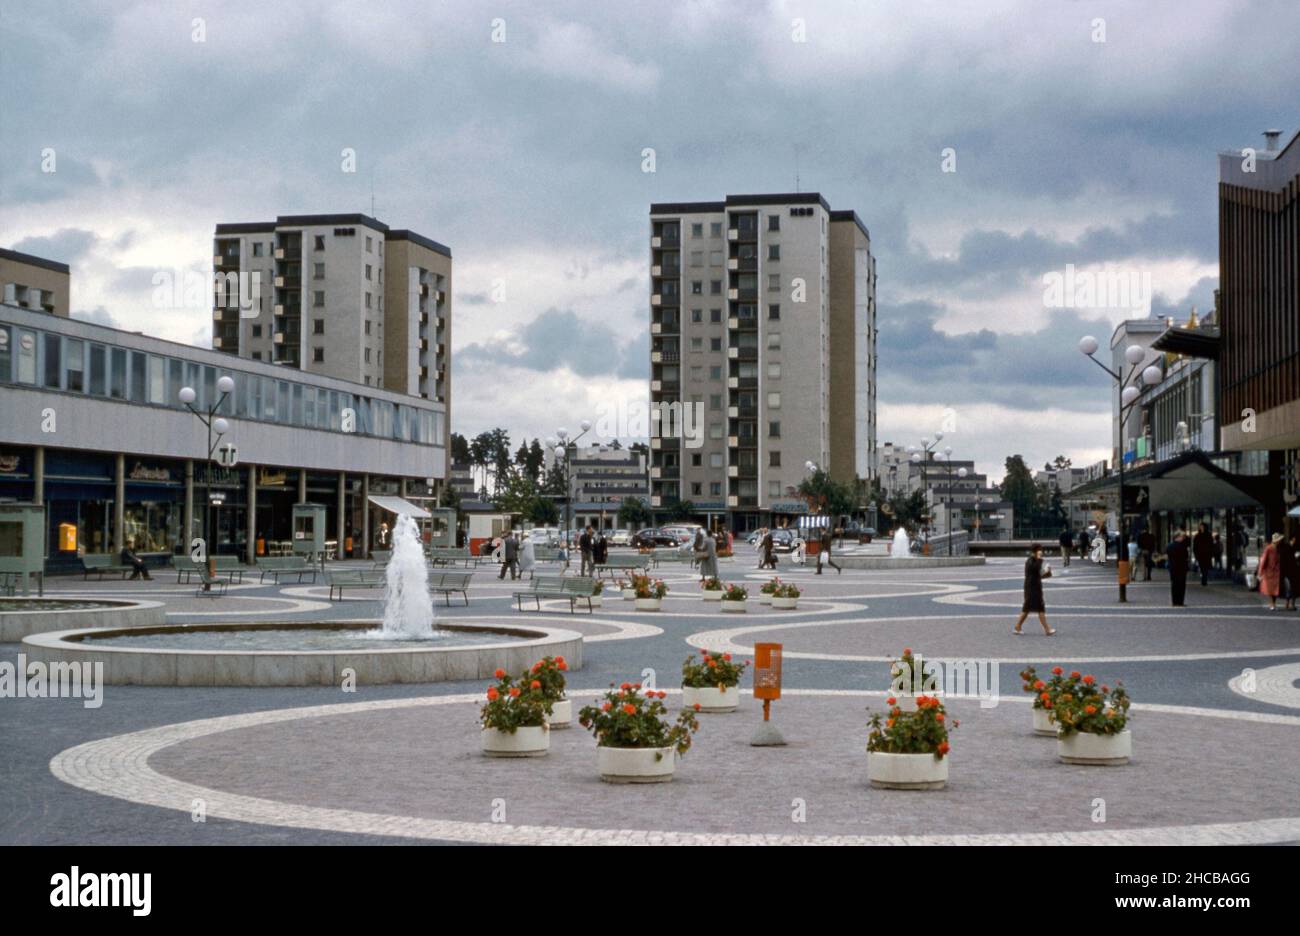 Una vista de 1961 del Vällingby Centrum, el centro comercial del moderno suburbio de posguerra de Vällingby en el noroeste de Estocolmo, Suecia. La plaza central alberga a menudo un mercado. El metro de Estocolmo pasa por el centro. La señal 'T' (izquierda) indica una entrada a la estación debajo de la plaza. Esta imagen es de una transparencia de color de 35mm Agfacolor amateur, una fotografía de 1960s. Foto de stock